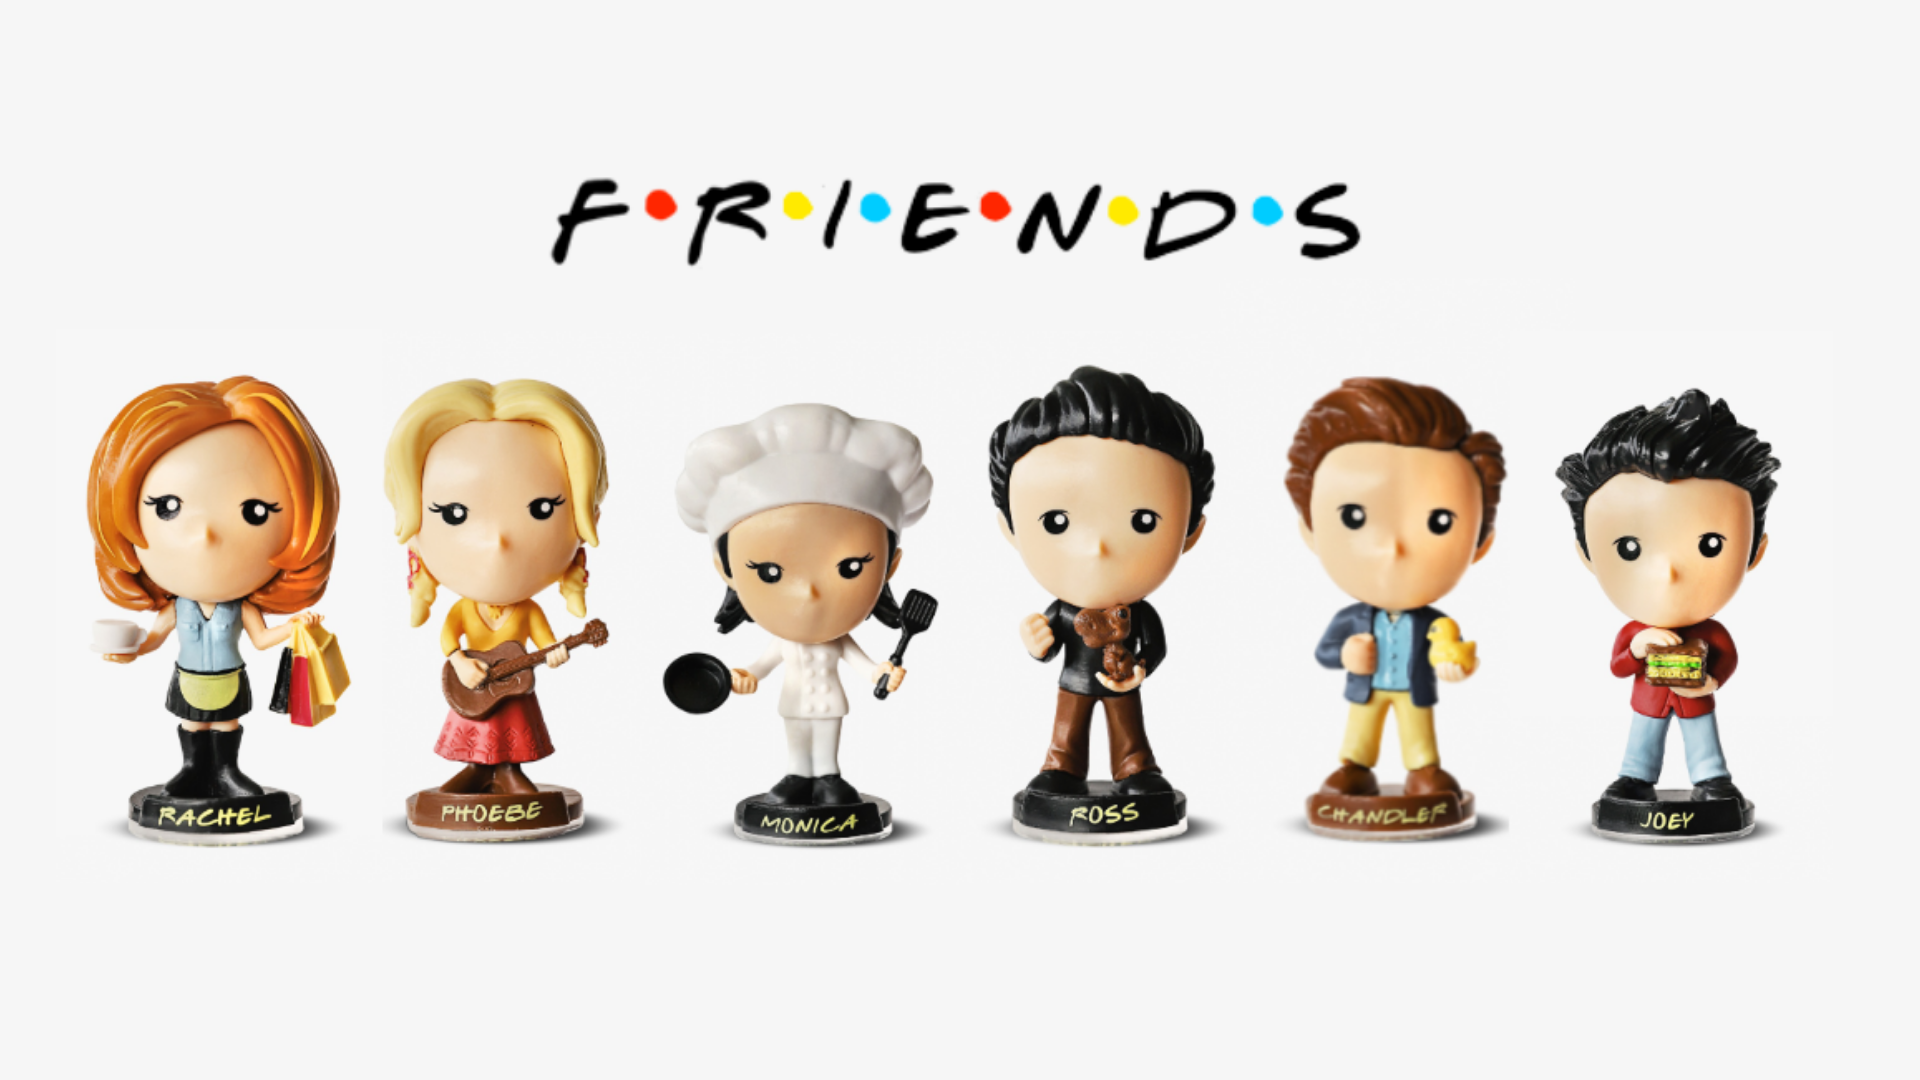 Bob's lança miniaturas dos personagens de Friends, por R$ 14,90 -  31/05/2021 - UOL Economia